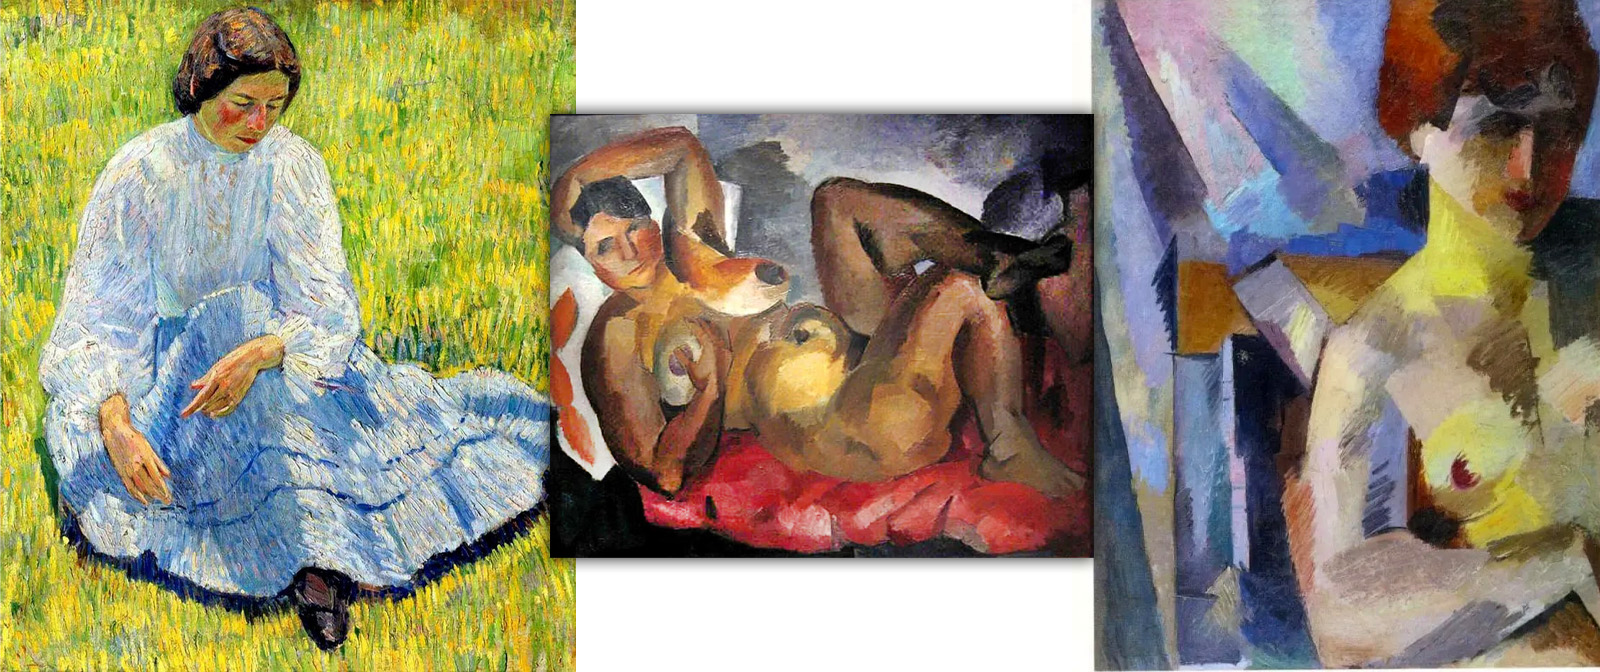 Натюрморты с картошкой вместо обнажённых наяд. Особый взгляд на живопись Роберта Фалька.